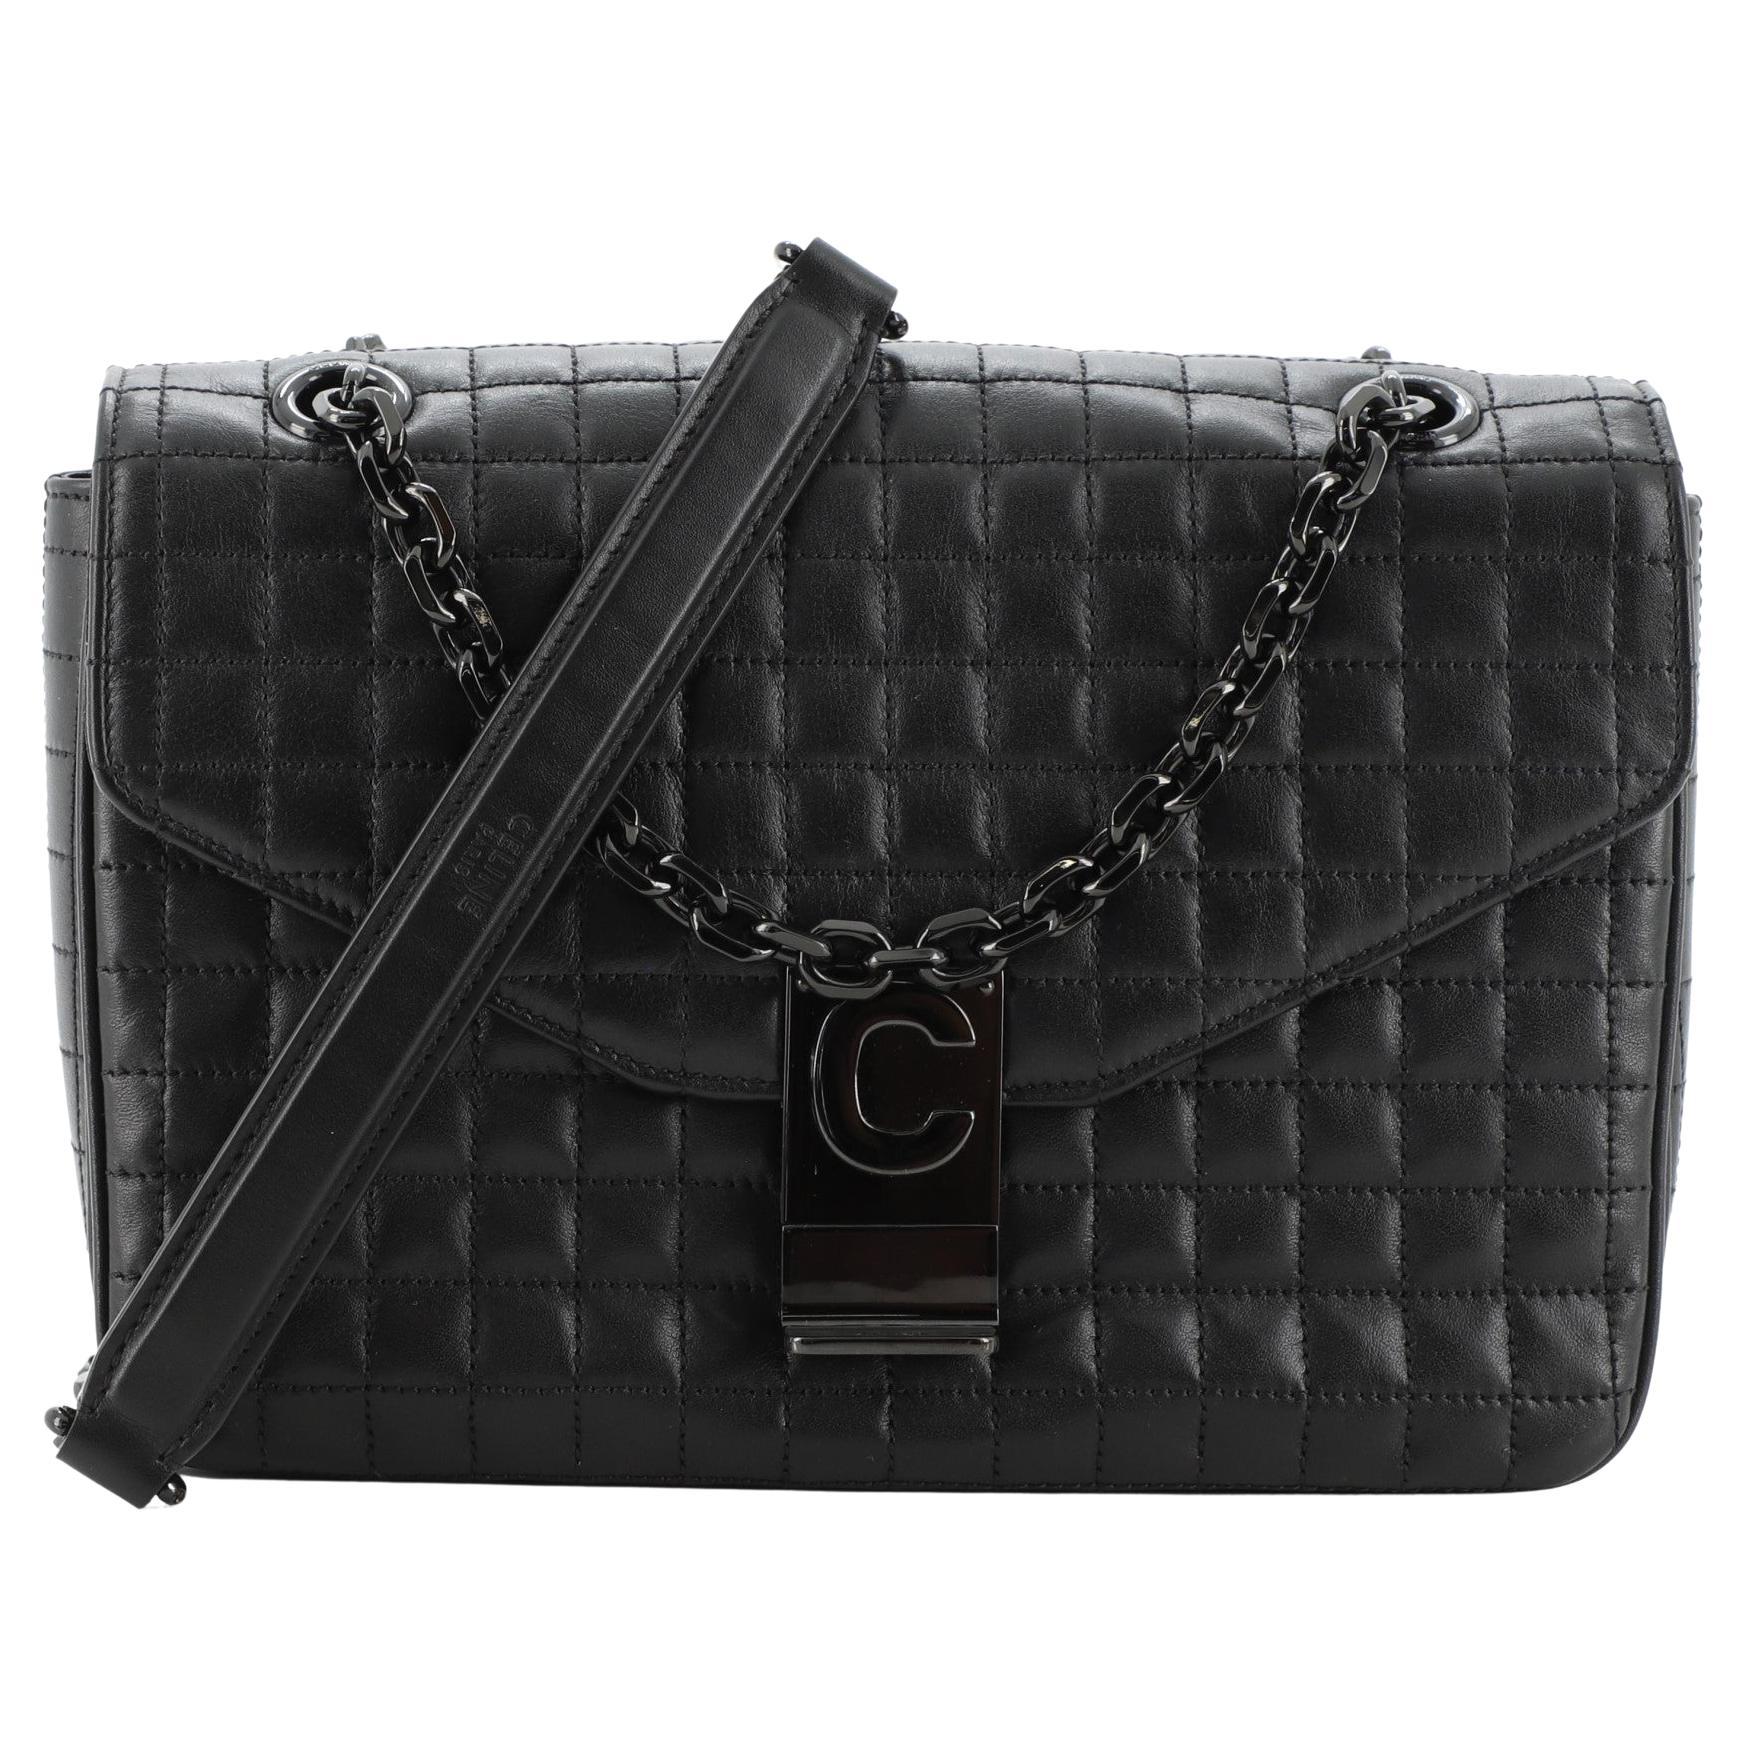 Celine C Bag Quilted Leather Medium